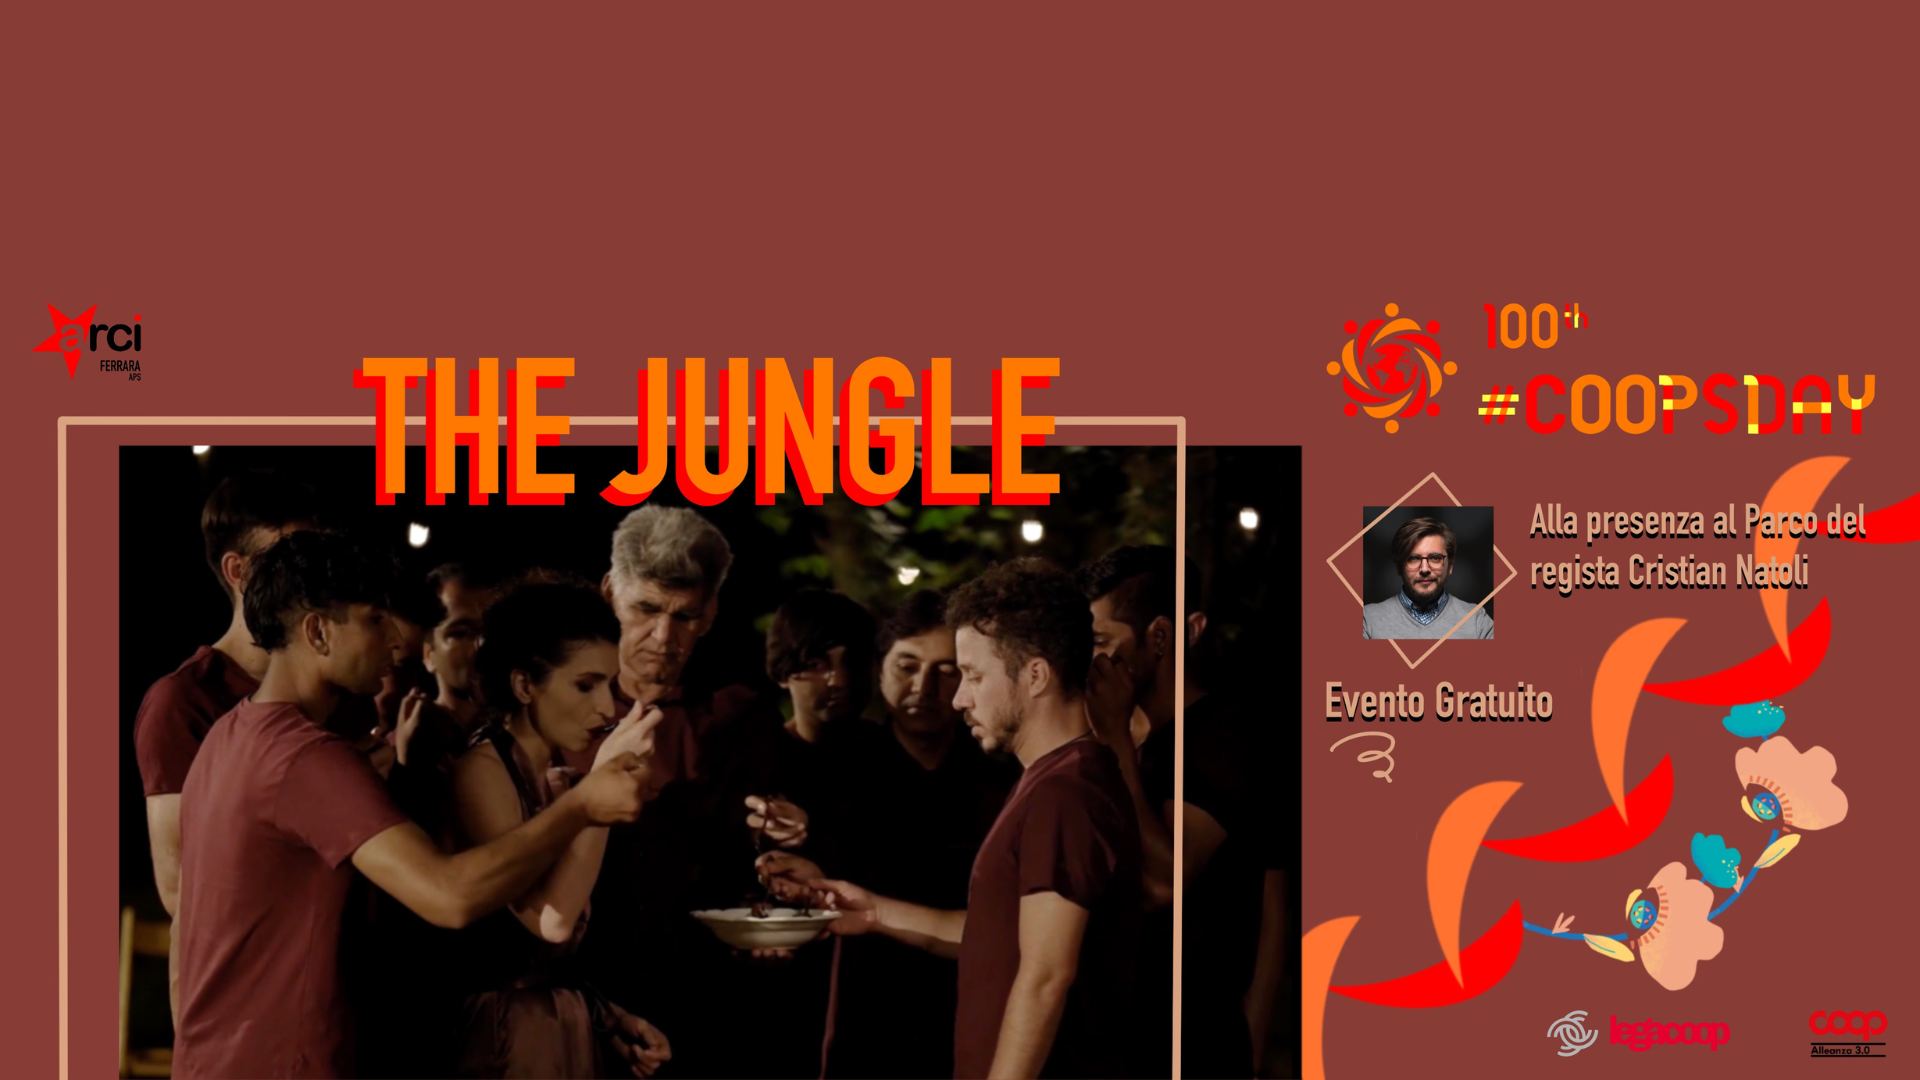 Coopsday 2022 a Ferrara: proiezione del film The Jungle e laboratori di stop motion all’Arena Coop Alleanza 3.0